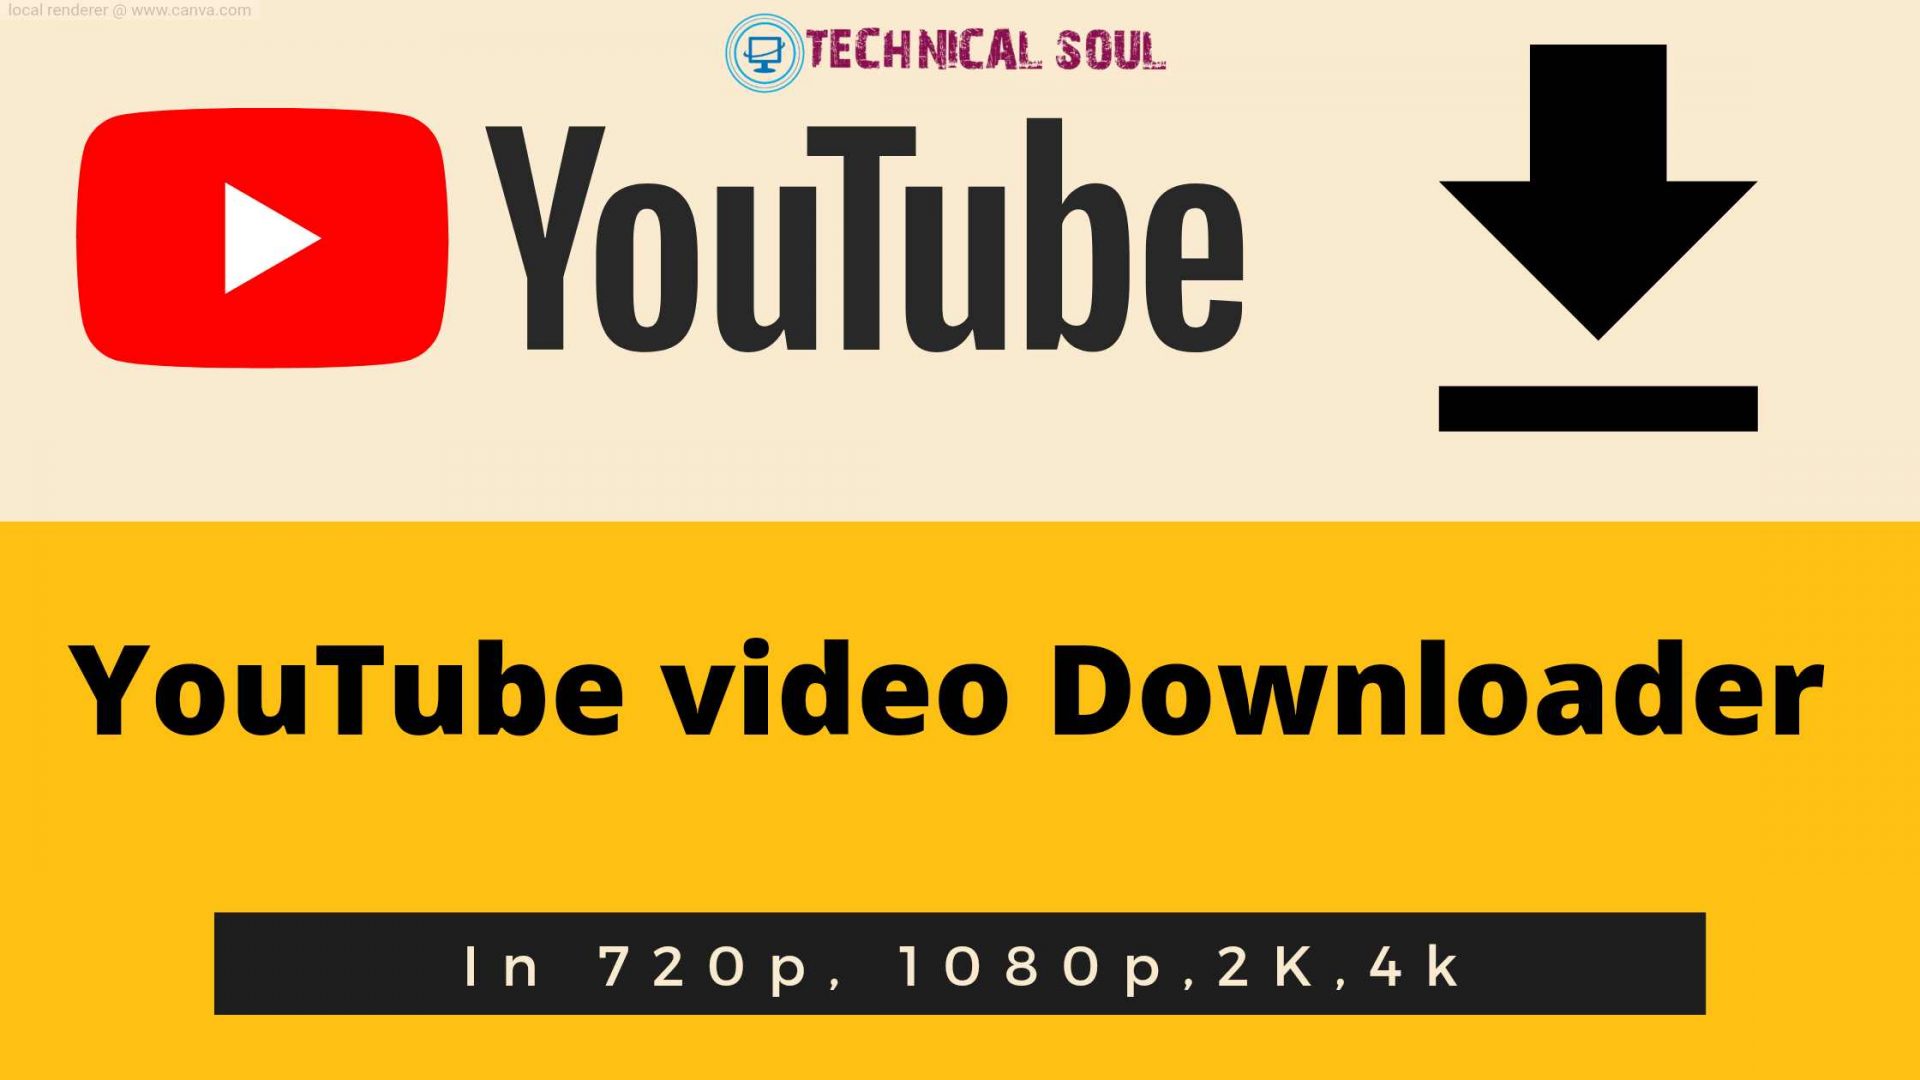 Download YouTube Videos in 480p, 720p, 1080p, 2K, 4K- #7 Methods